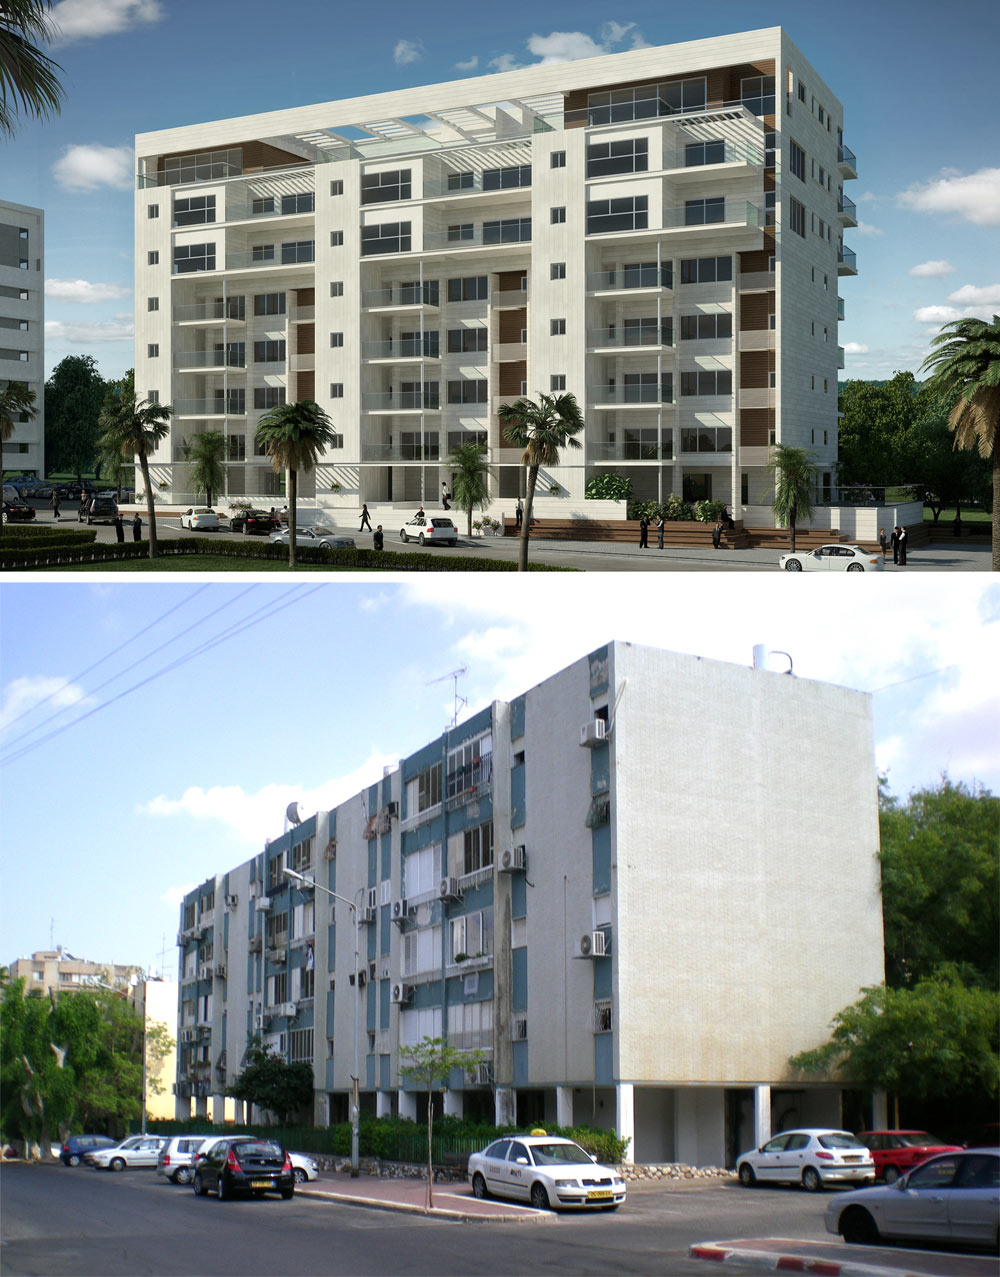 הפרויקט ברחוב שטרן בקרית אונו - לפני ואחרי (צילום והדמיה: יואש ינקוביץ, Oleg 55 Design)